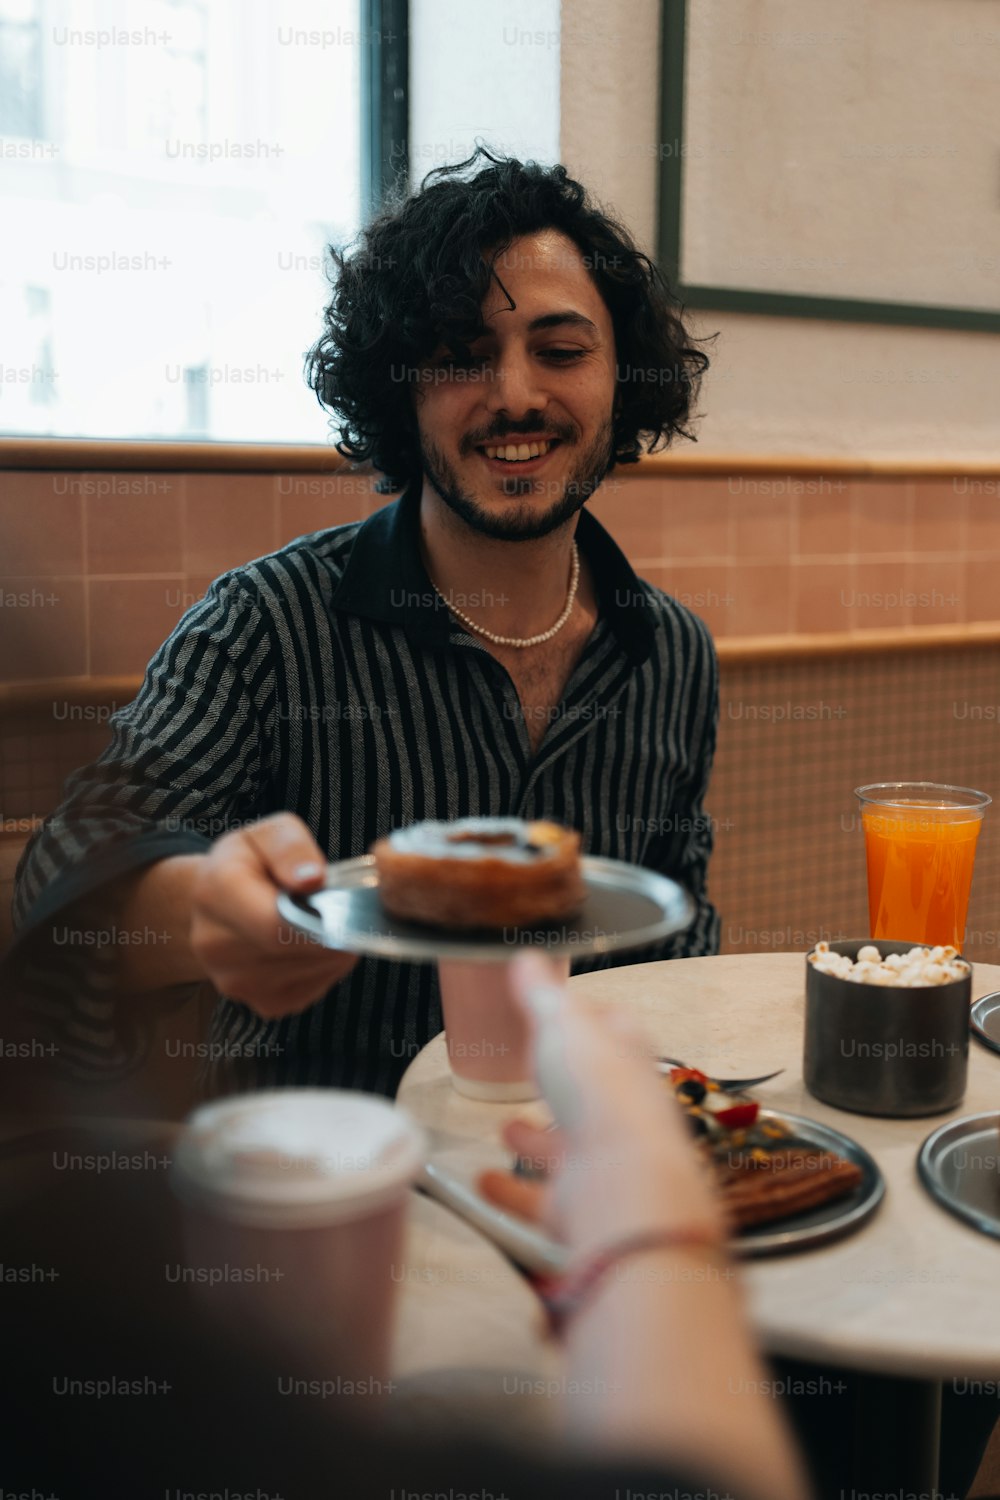 Un hombre sentado en una mesa con un plato de comida